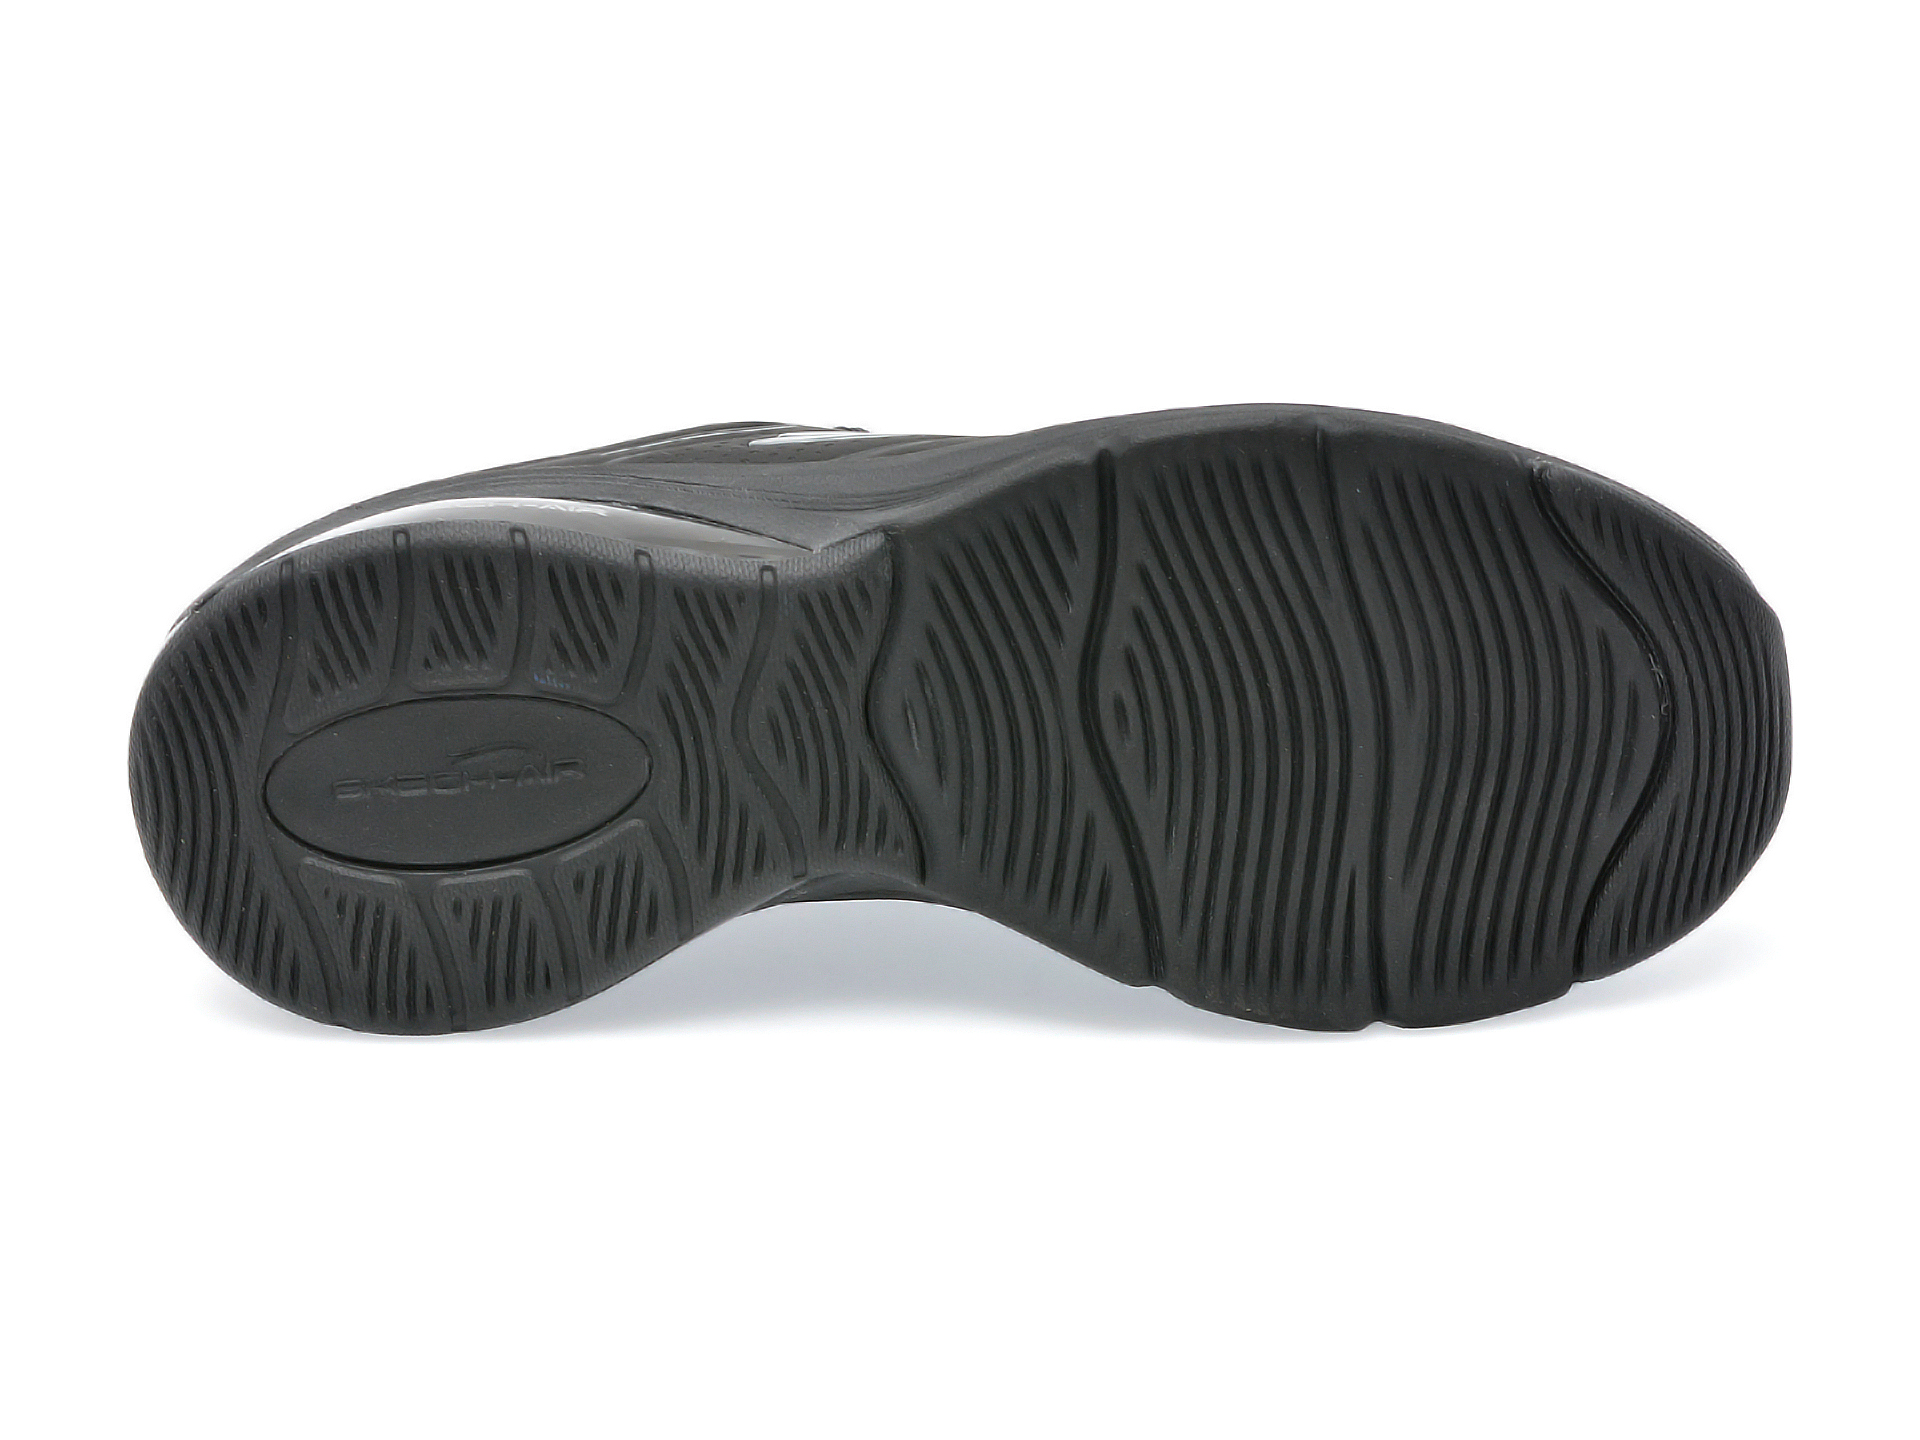 Poze Pantofi sport SKECHERS negri, SKECH-AIR EXTREME 2.0, din piele ecologica Tezyo